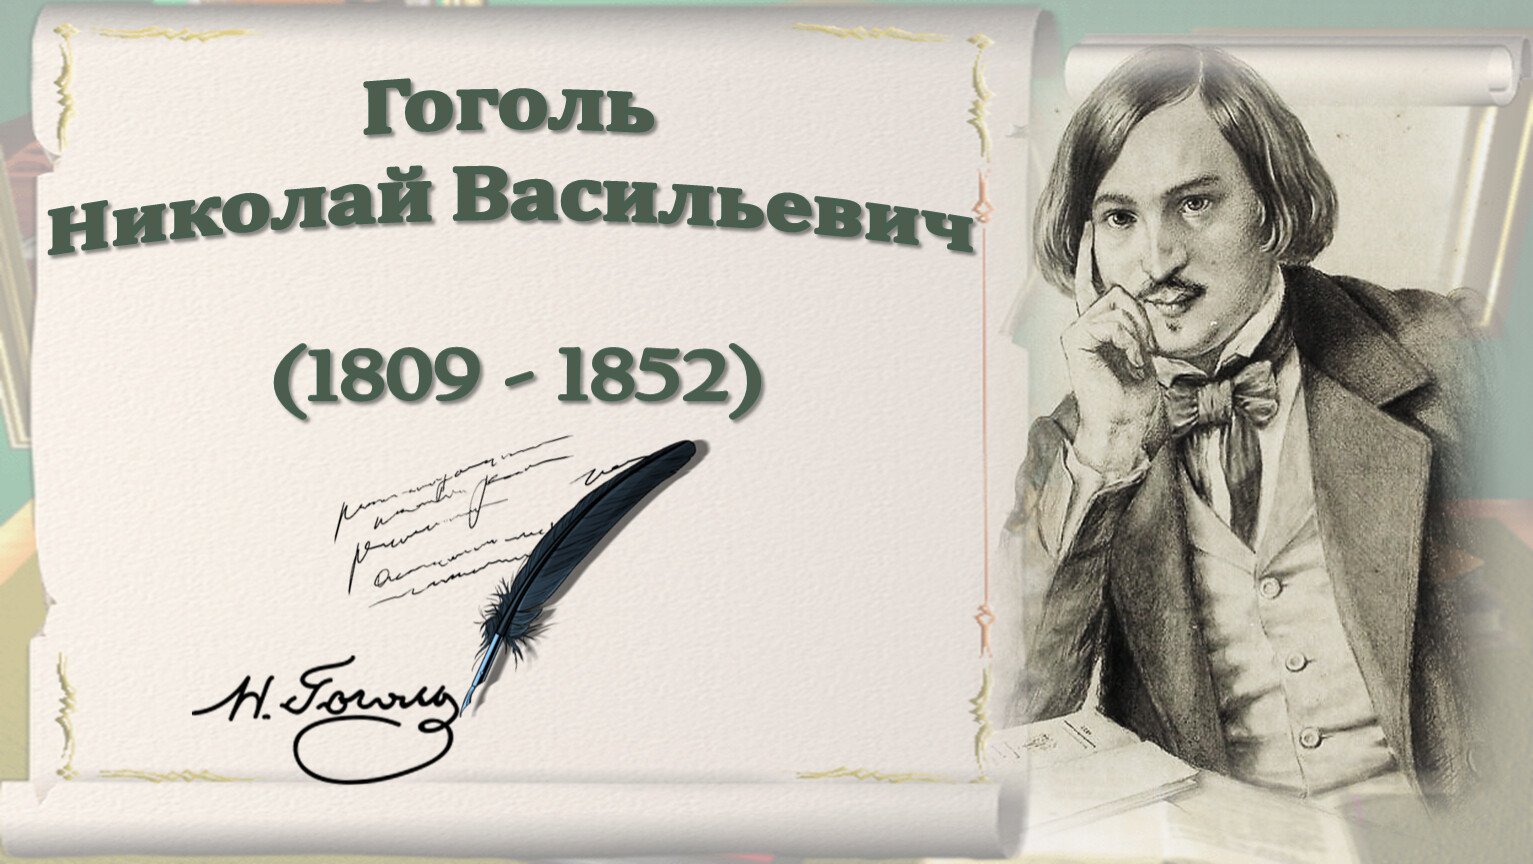 Гоголь юбилей. 215 Лет со дня рождения Николая Васильевича Гоголя.